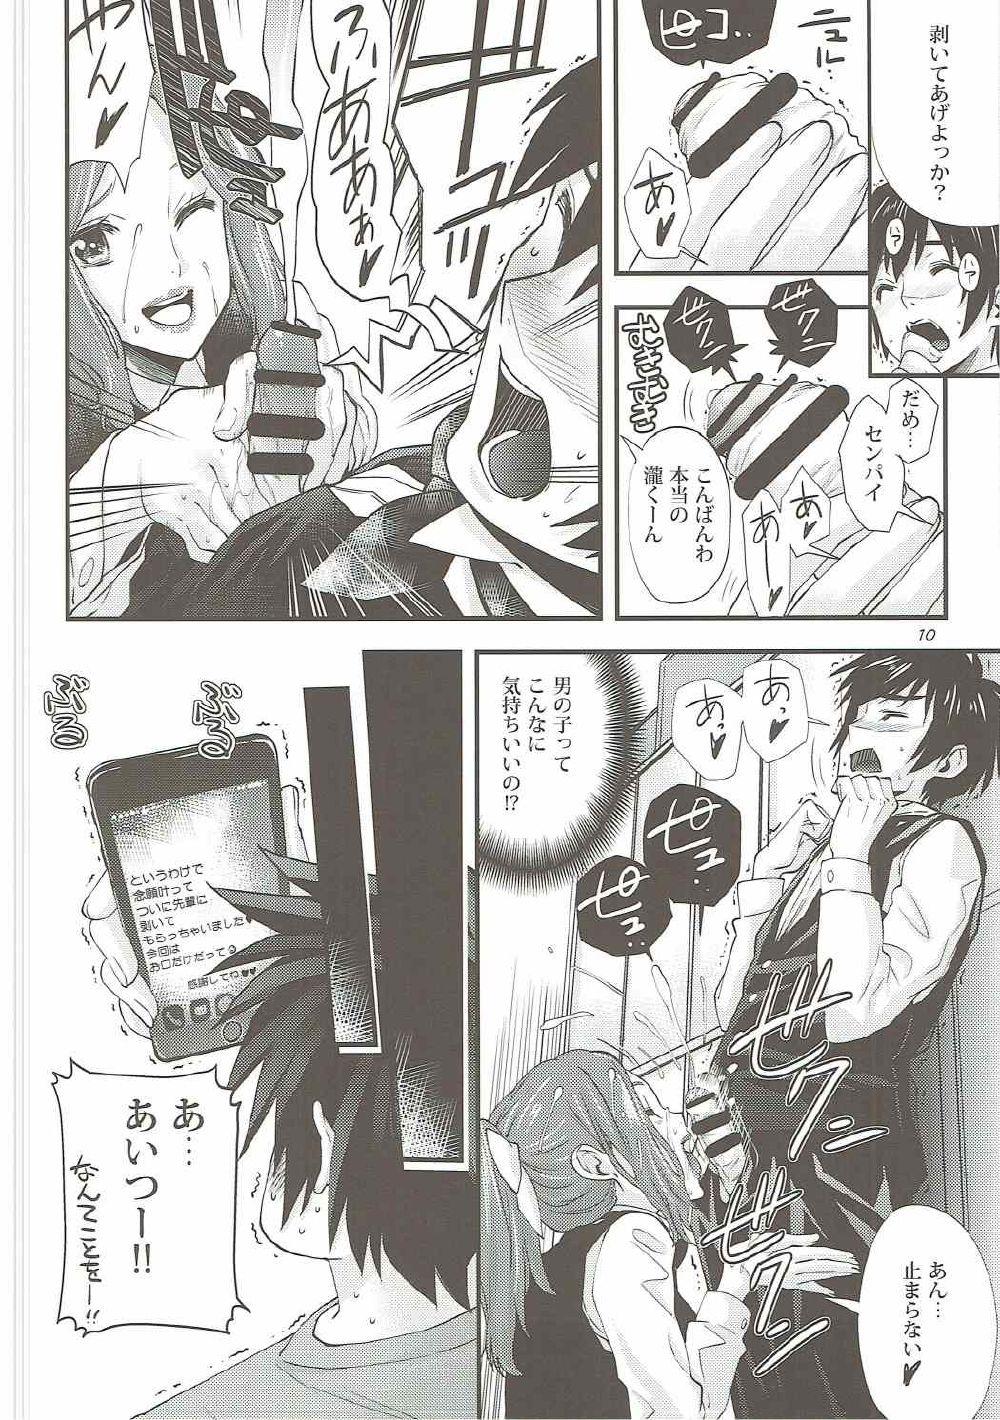 Juggs Shooting star - Kimi no na wa. Threeway - Page 9